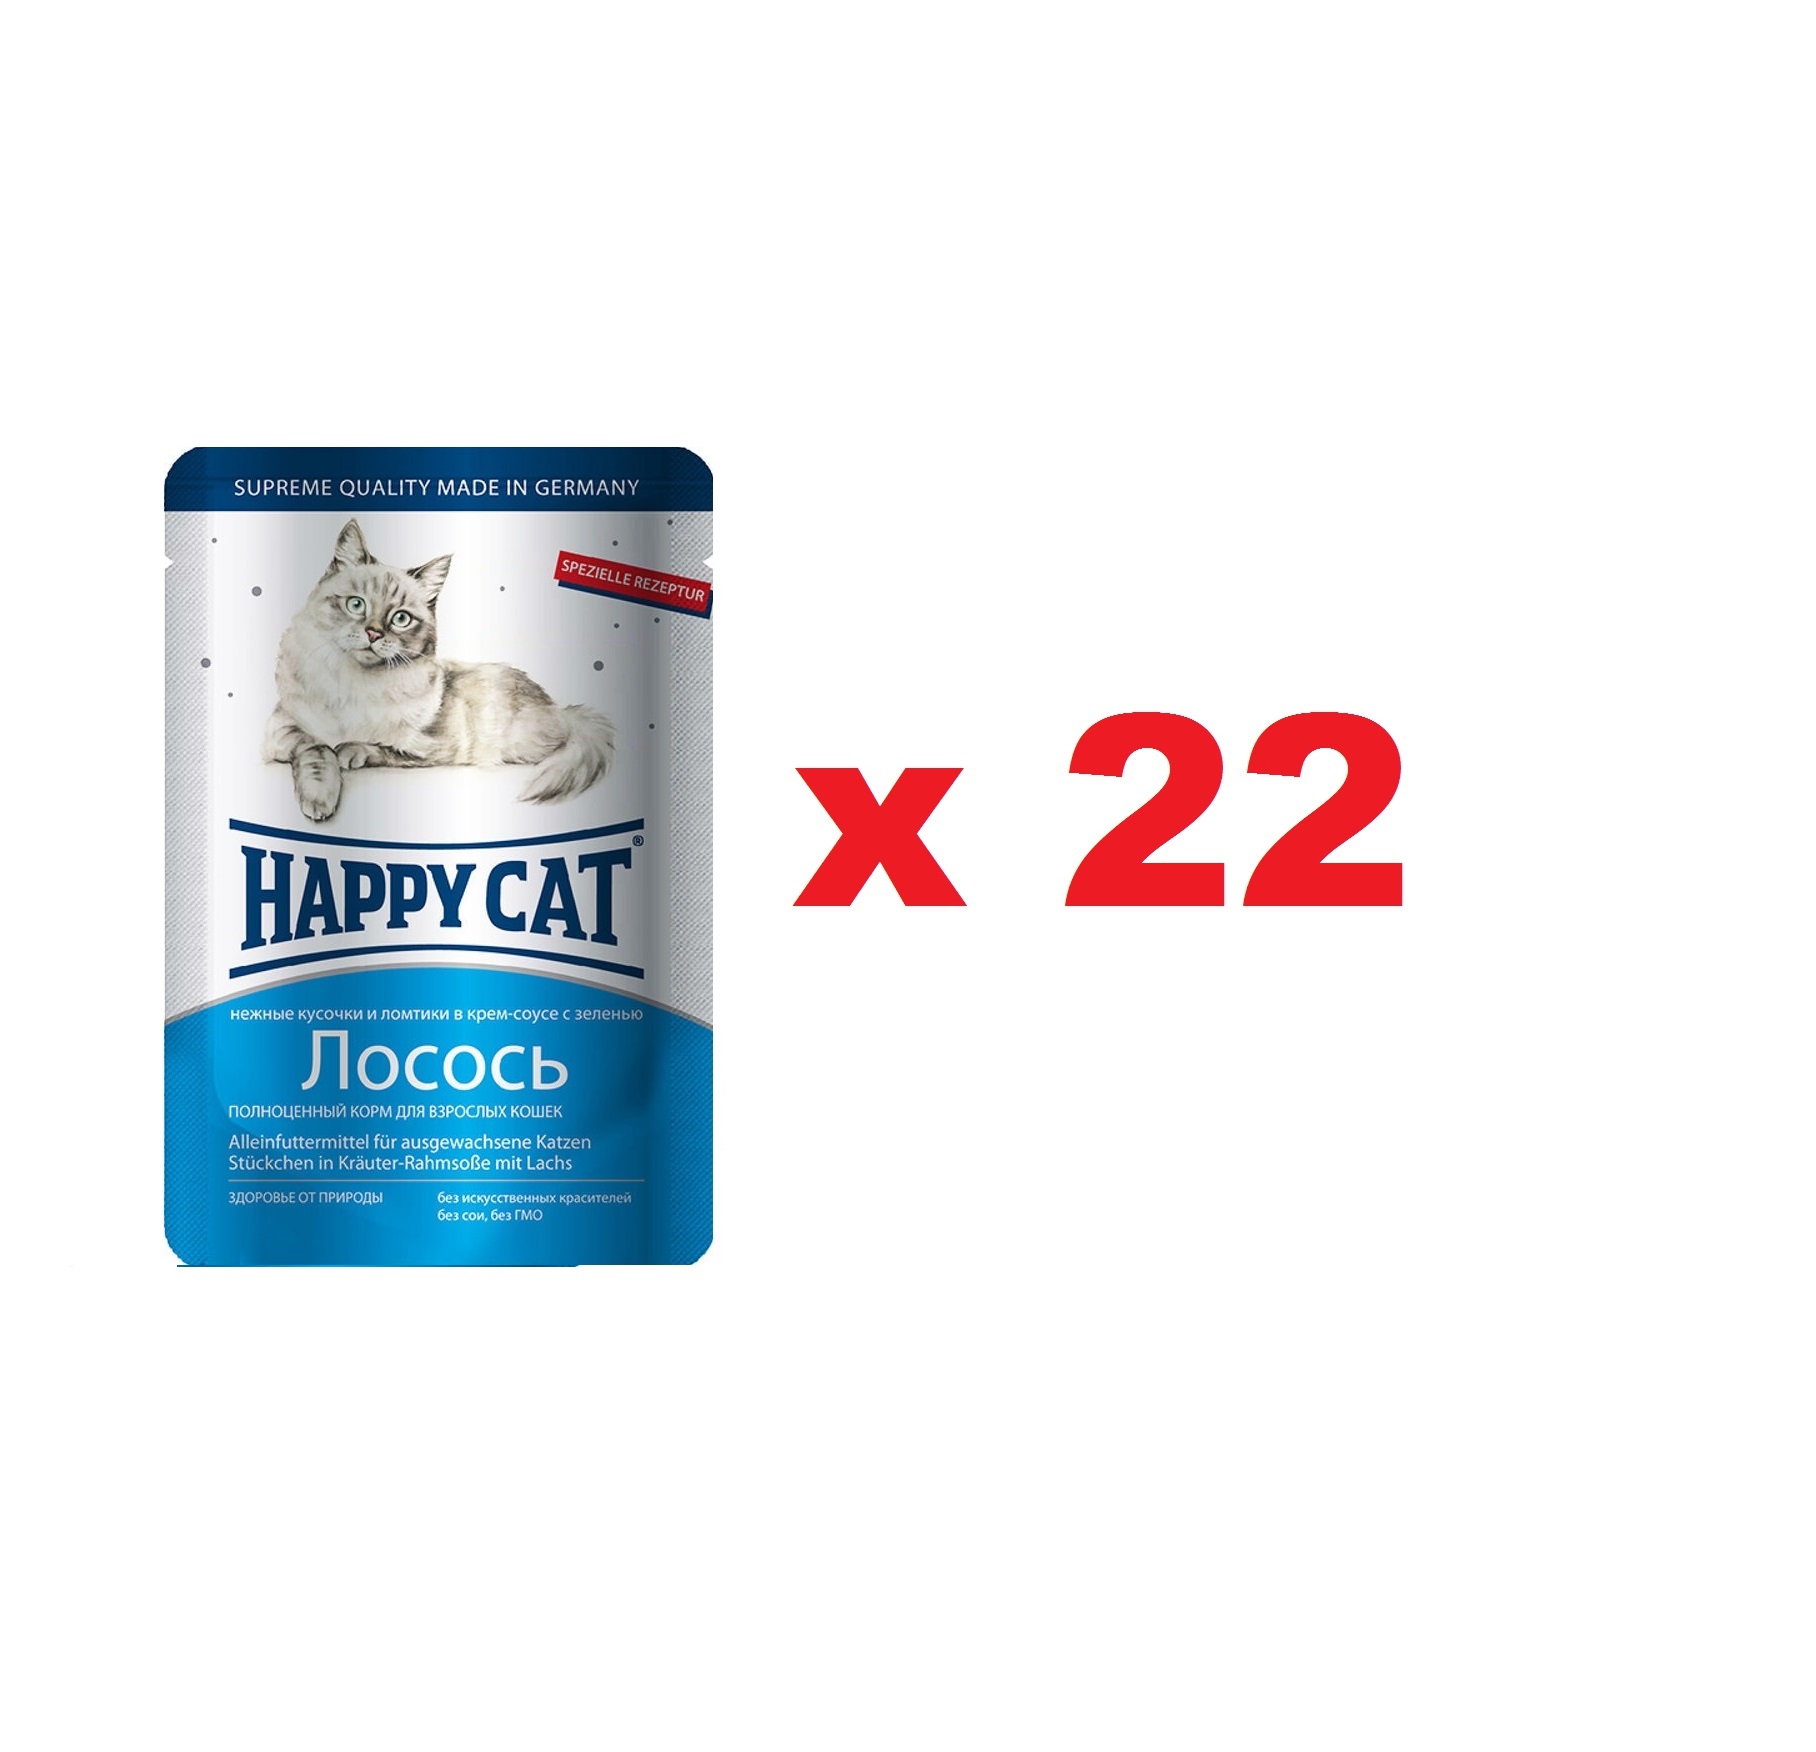 Хэппи Кэт пауч 100гр - Ломтики в Соусе - Лосось (Happy Cat)  1кор = 22шт